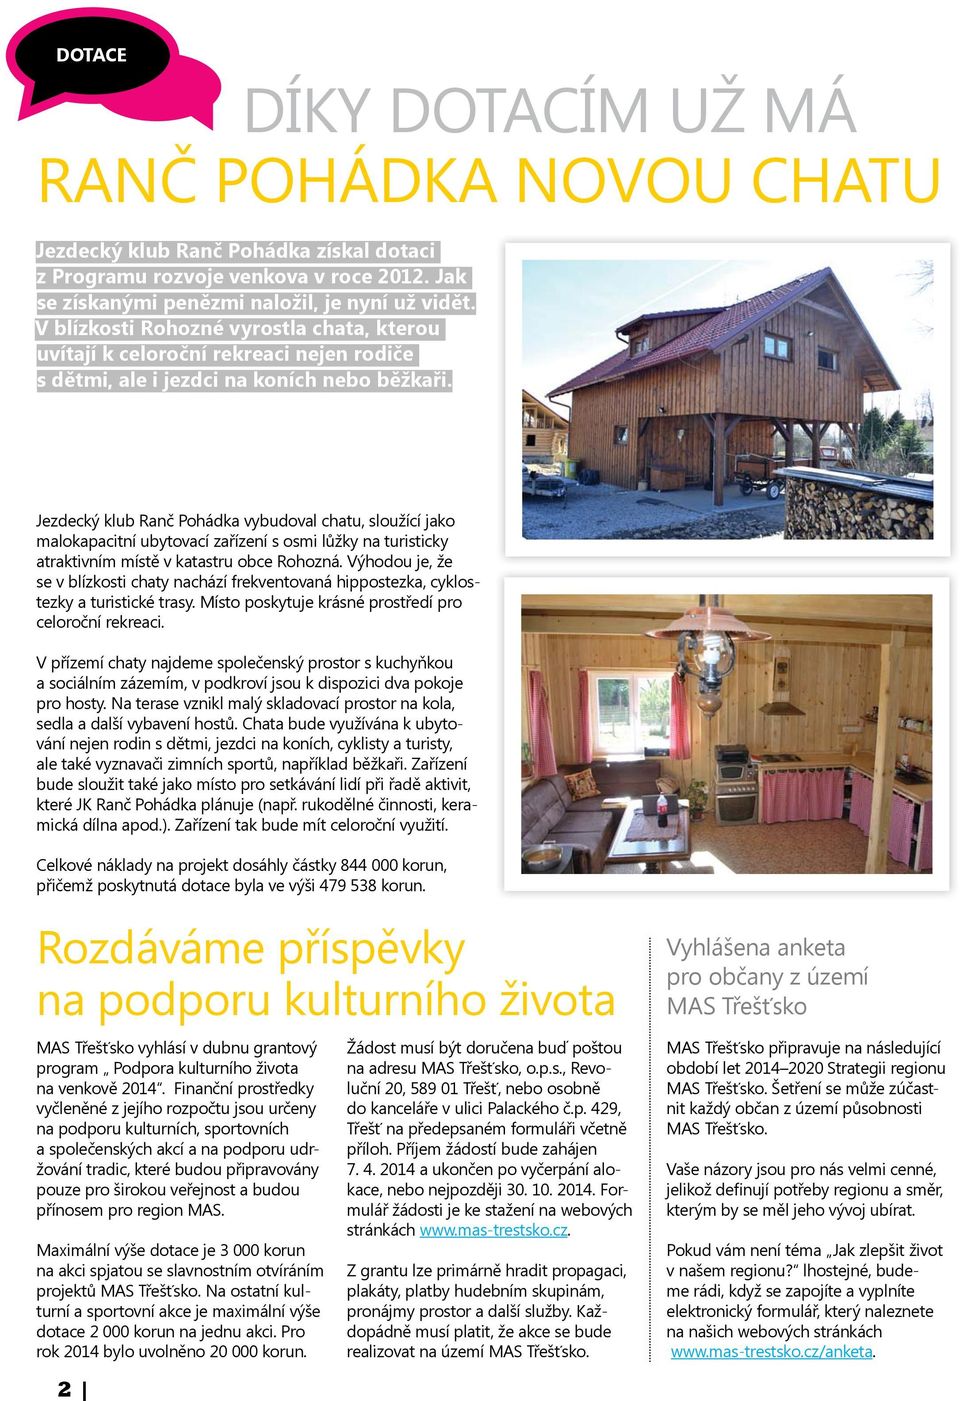 Jezdecký klub Ranč Pohádka vybudoval chatu, sloužící jako malokapacitní ubytovací zařízení s osmi lůžky na turisticky atraktivním místě v katastru obce Rohozná.